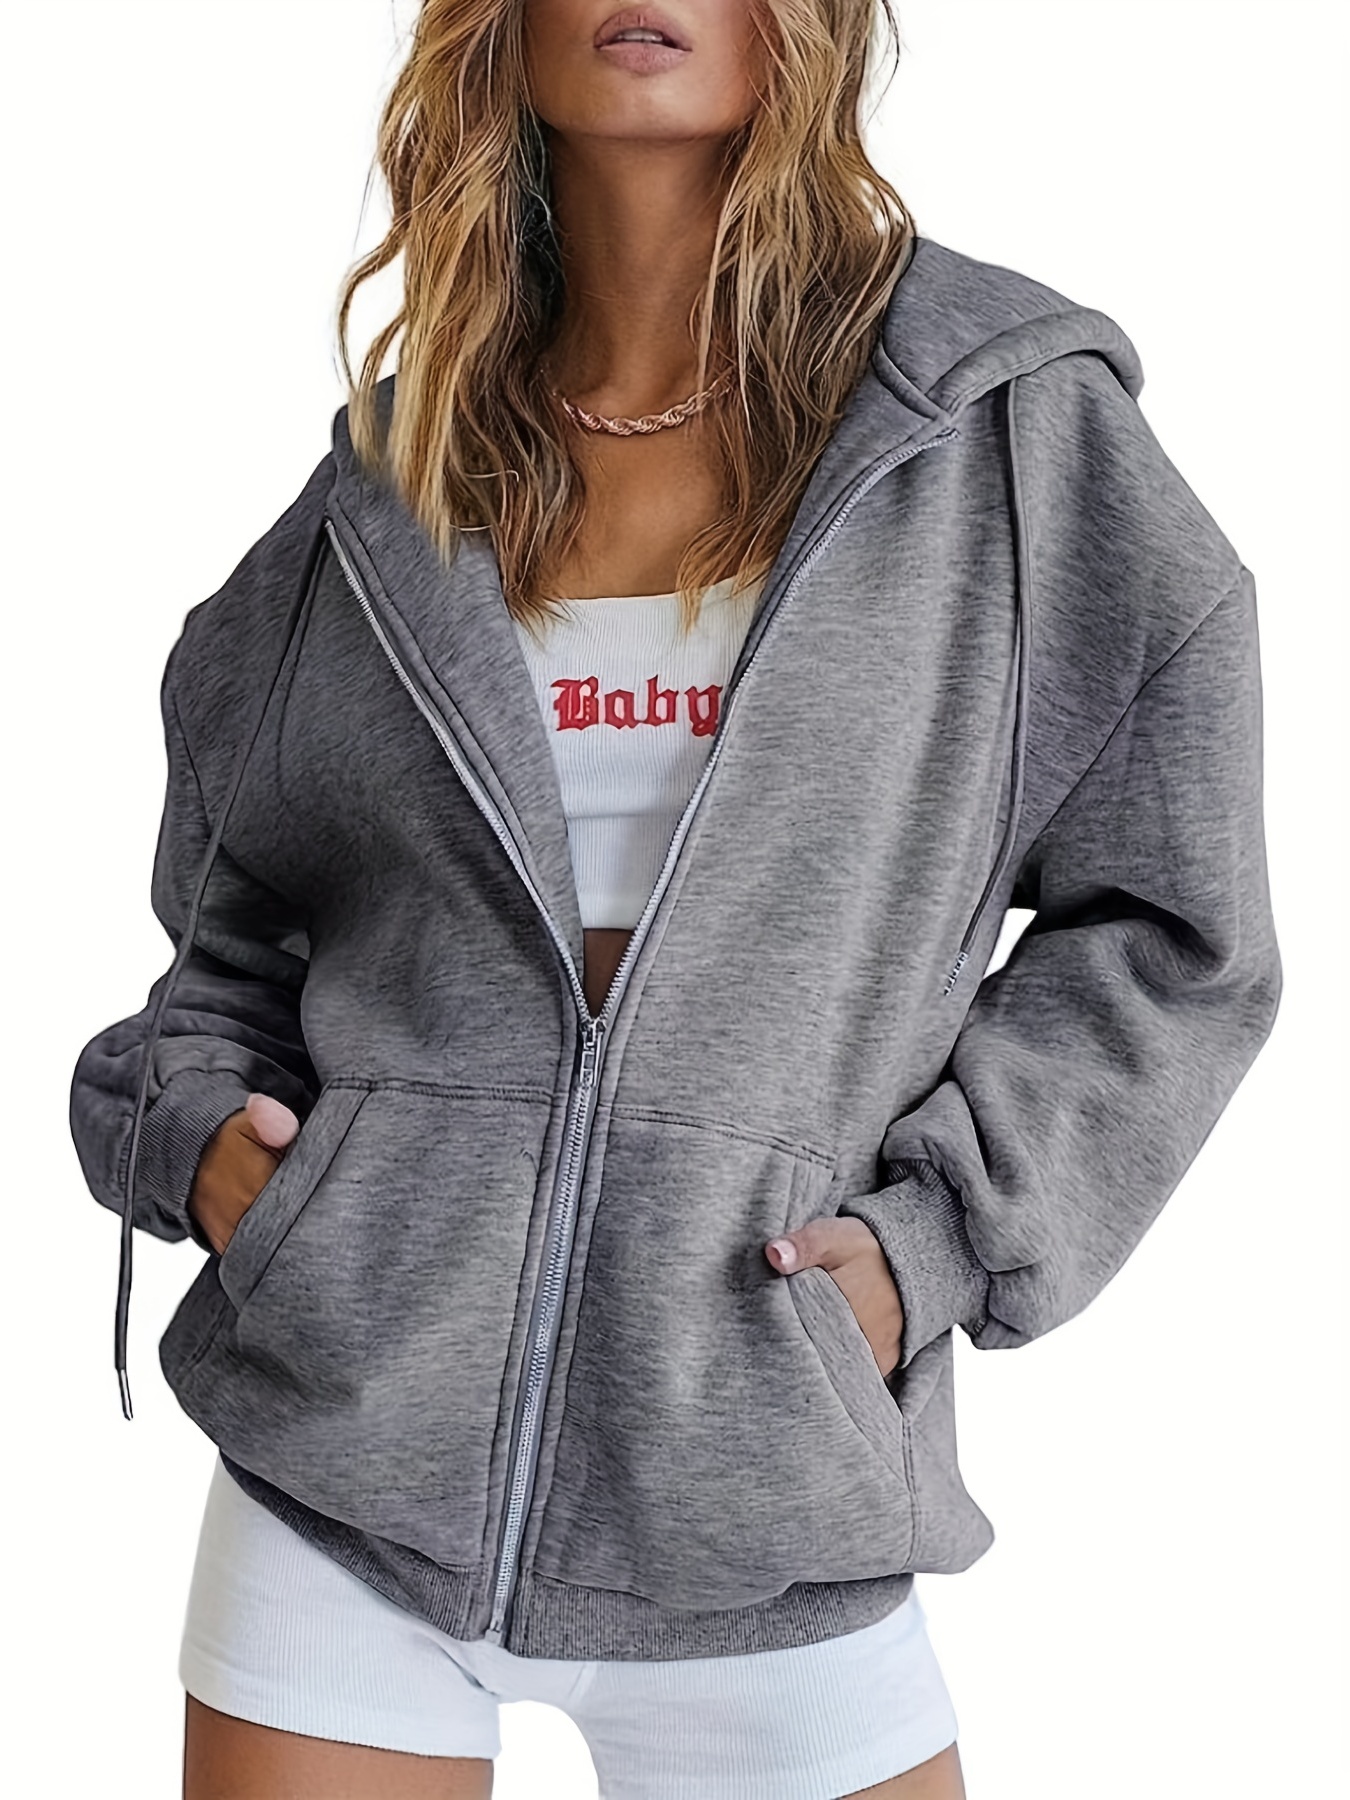 Womens Hoodie Casual Warm Long-Sleeves Printed Top Sweatshirt Oversize  Drawstring Loose Hoodies Pullover